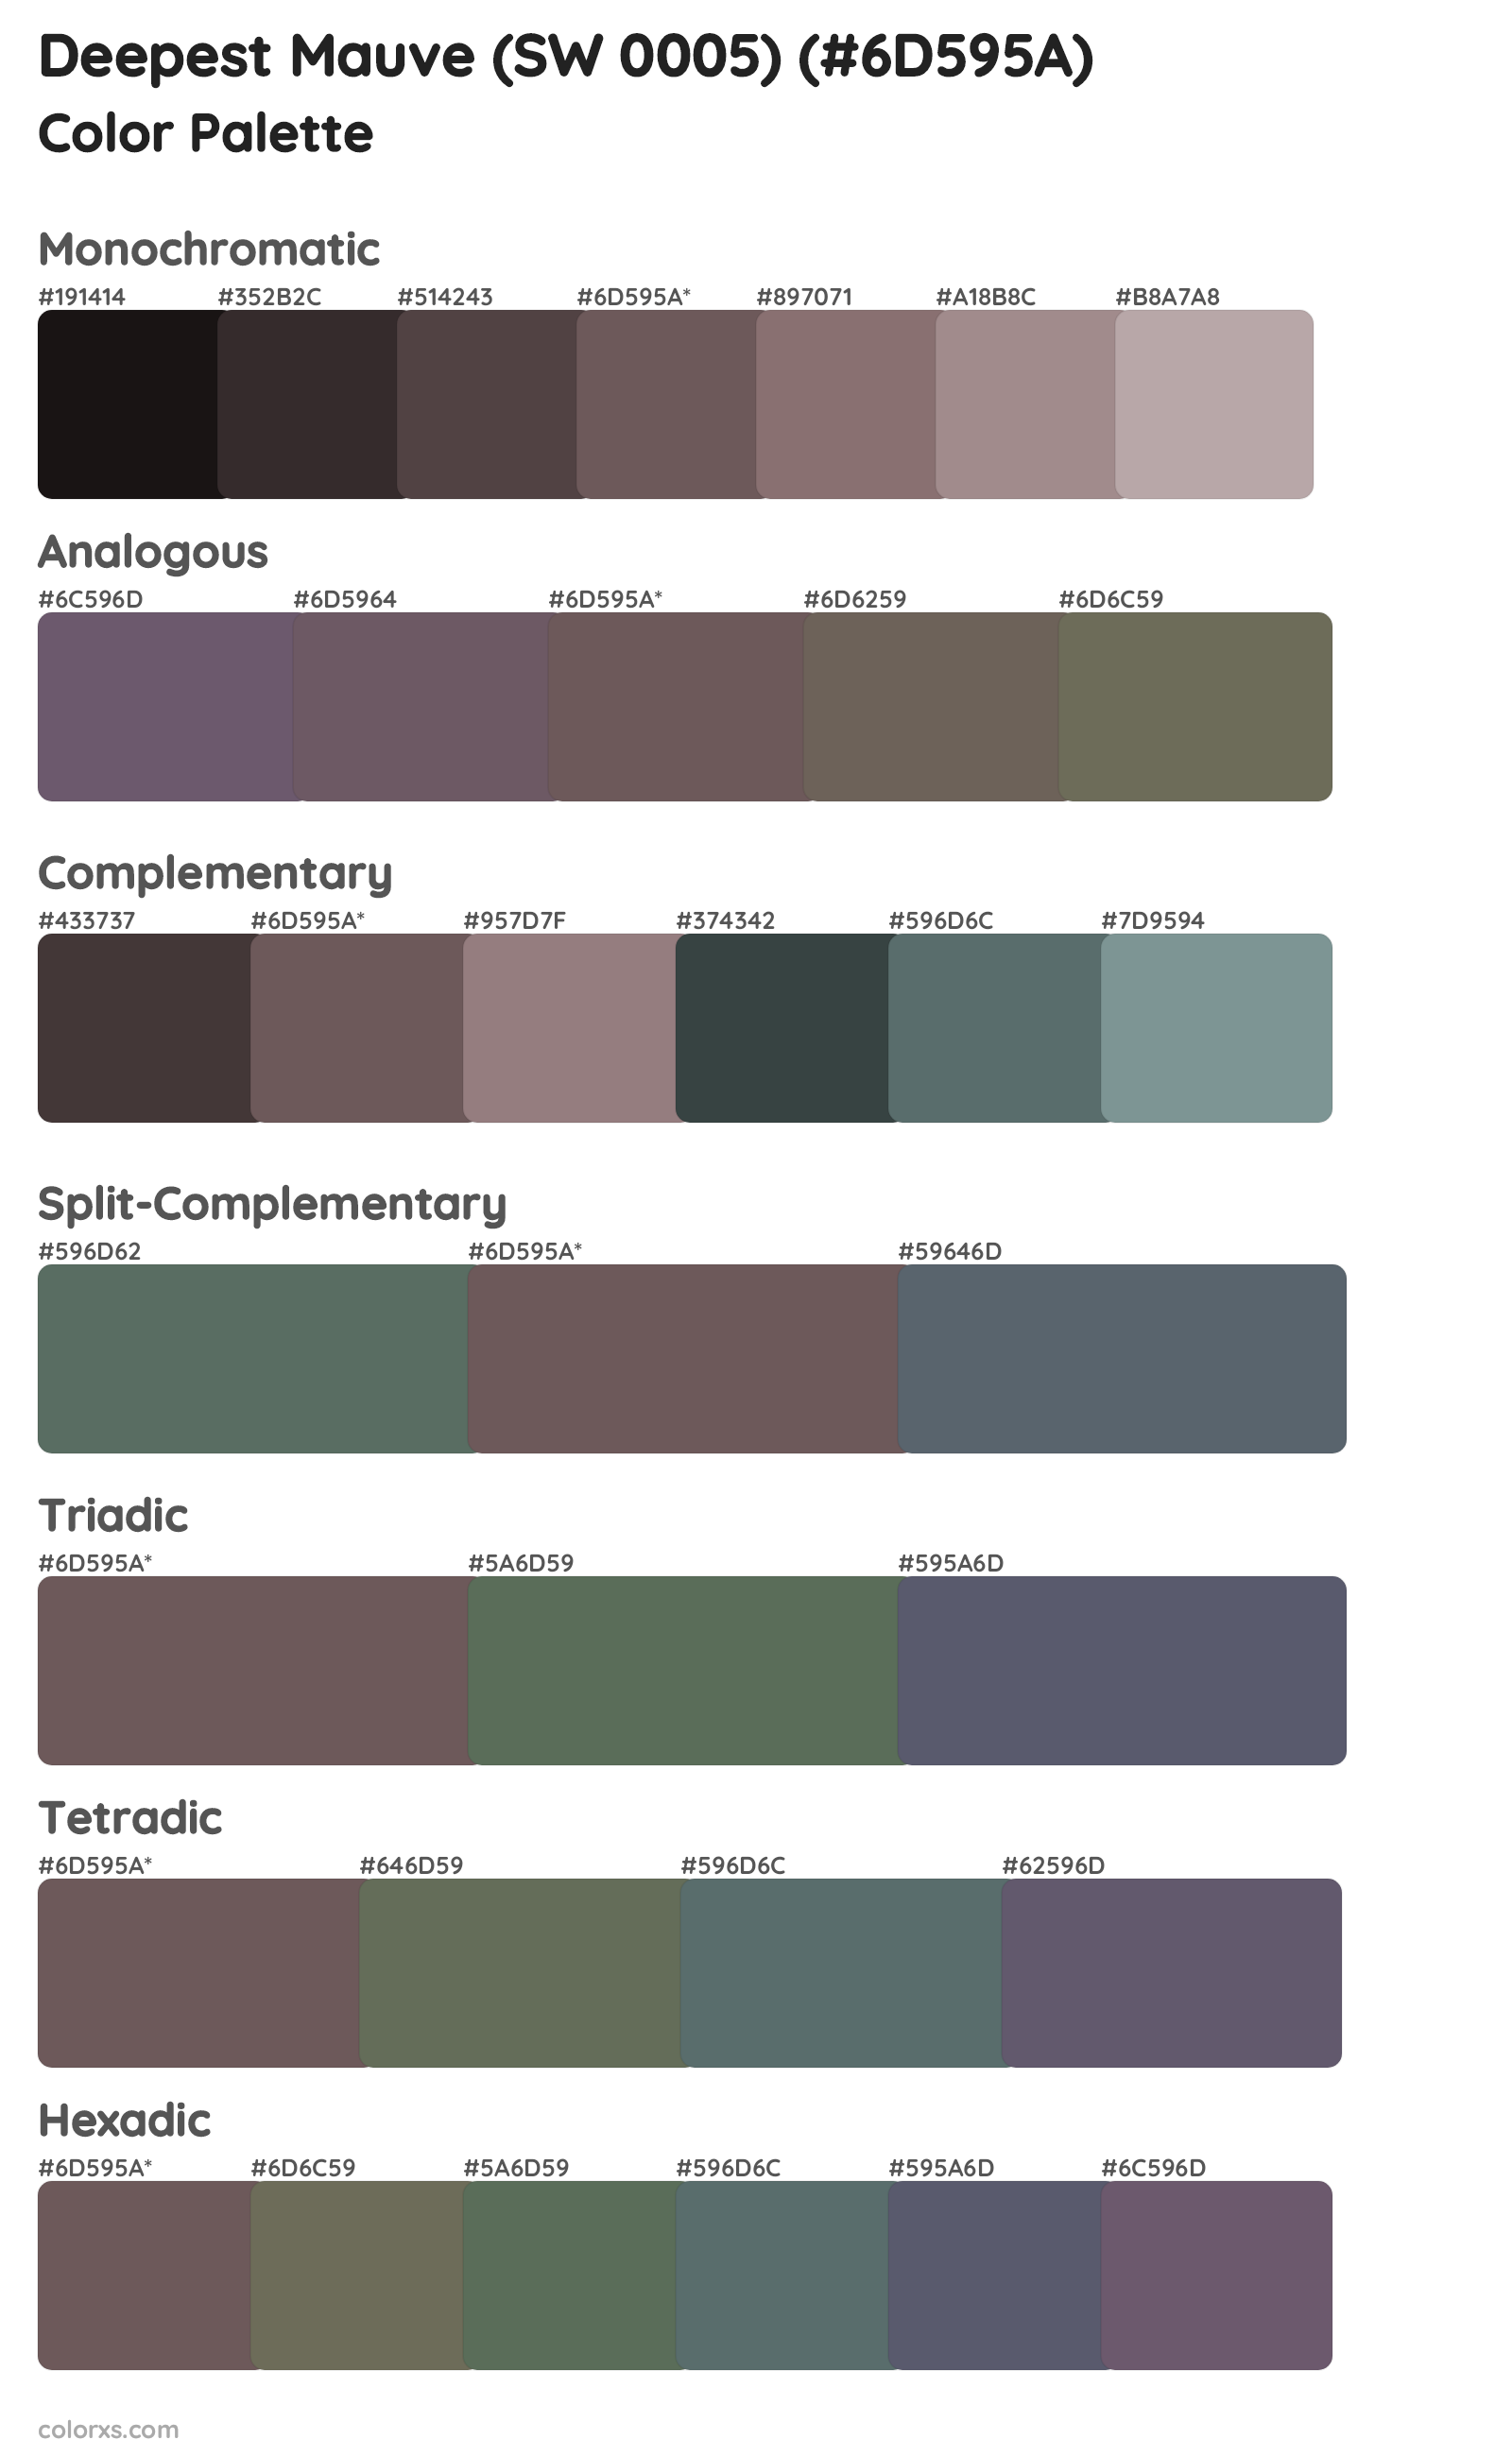 Deepest Mauve (SW 0005) Color Scheme Palettes